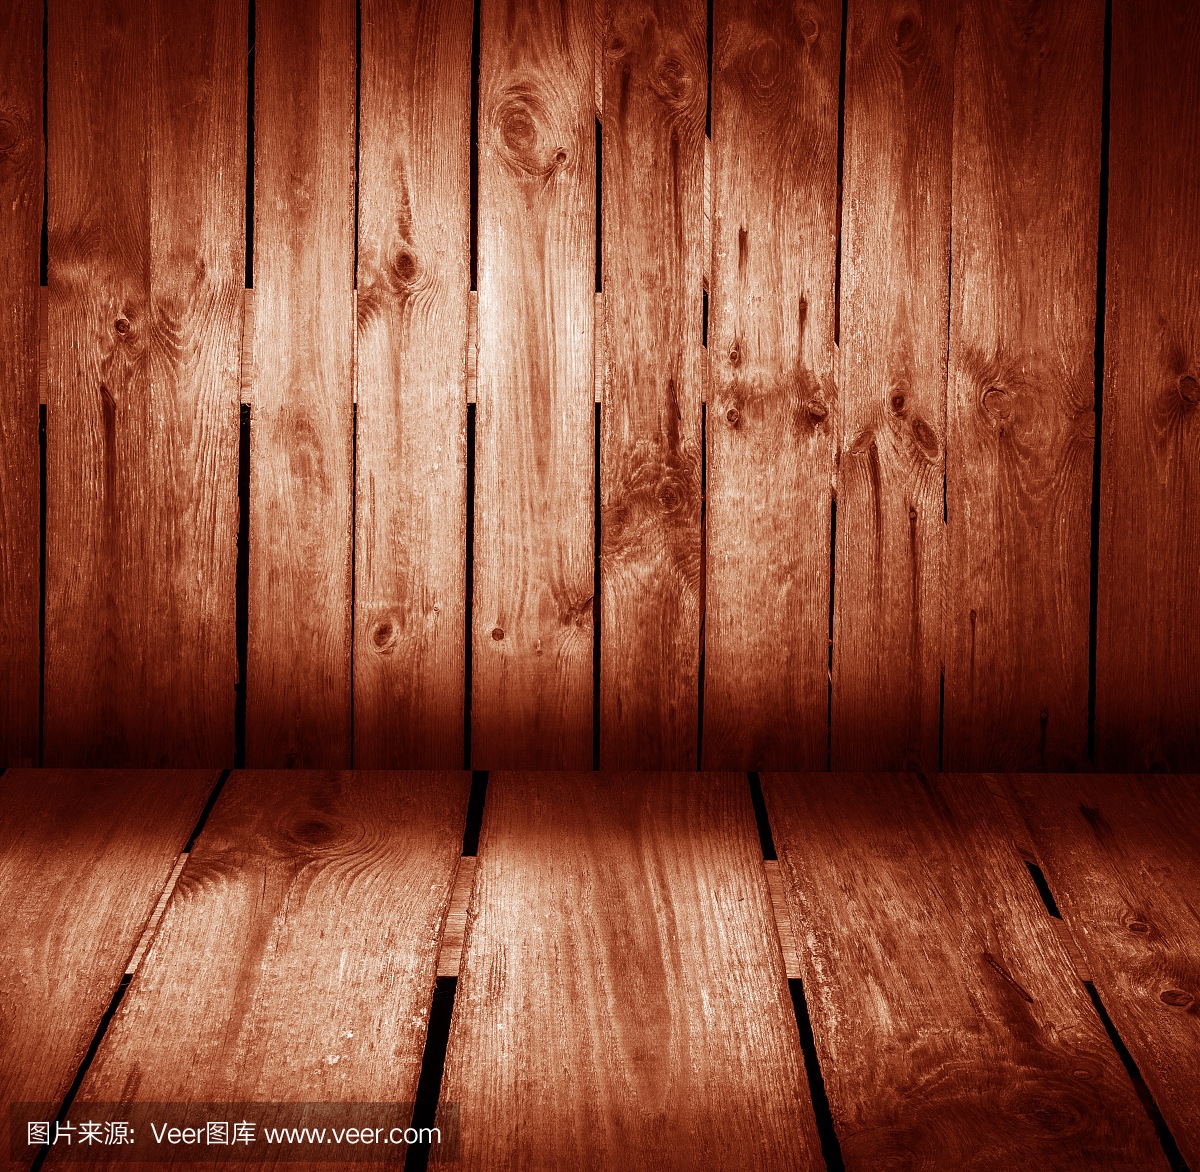 木墙和木地板色彩丰富的室内